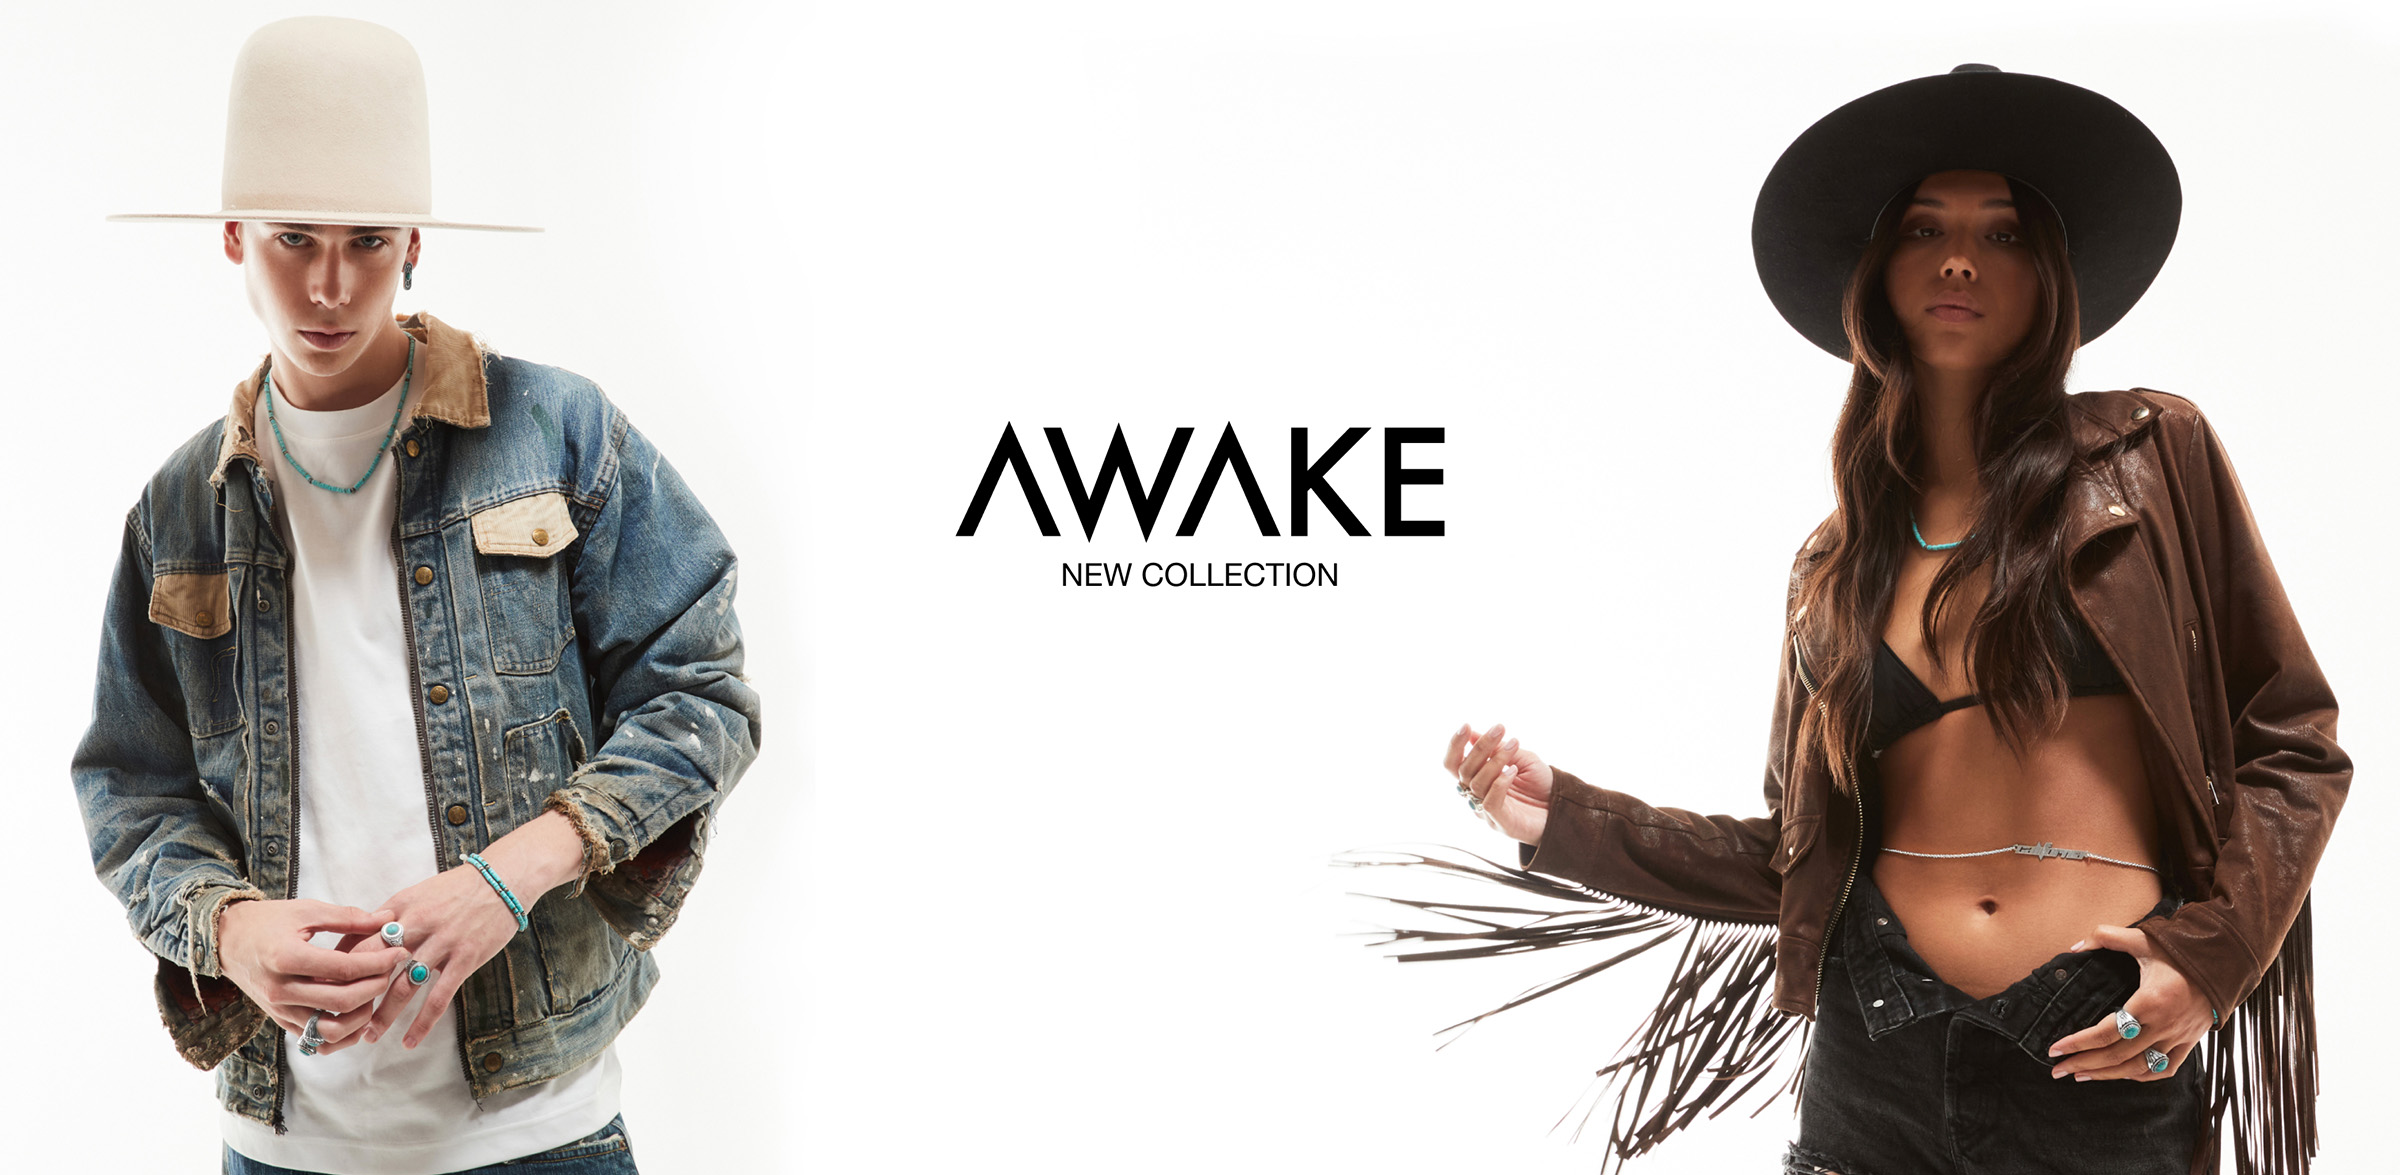 Con la nuova collezione Awake, Nove25 risveglia la connessione con la natura e realizza gioielli dallo spirito wild, in una riscoperta del fascino esotico ed elementale.